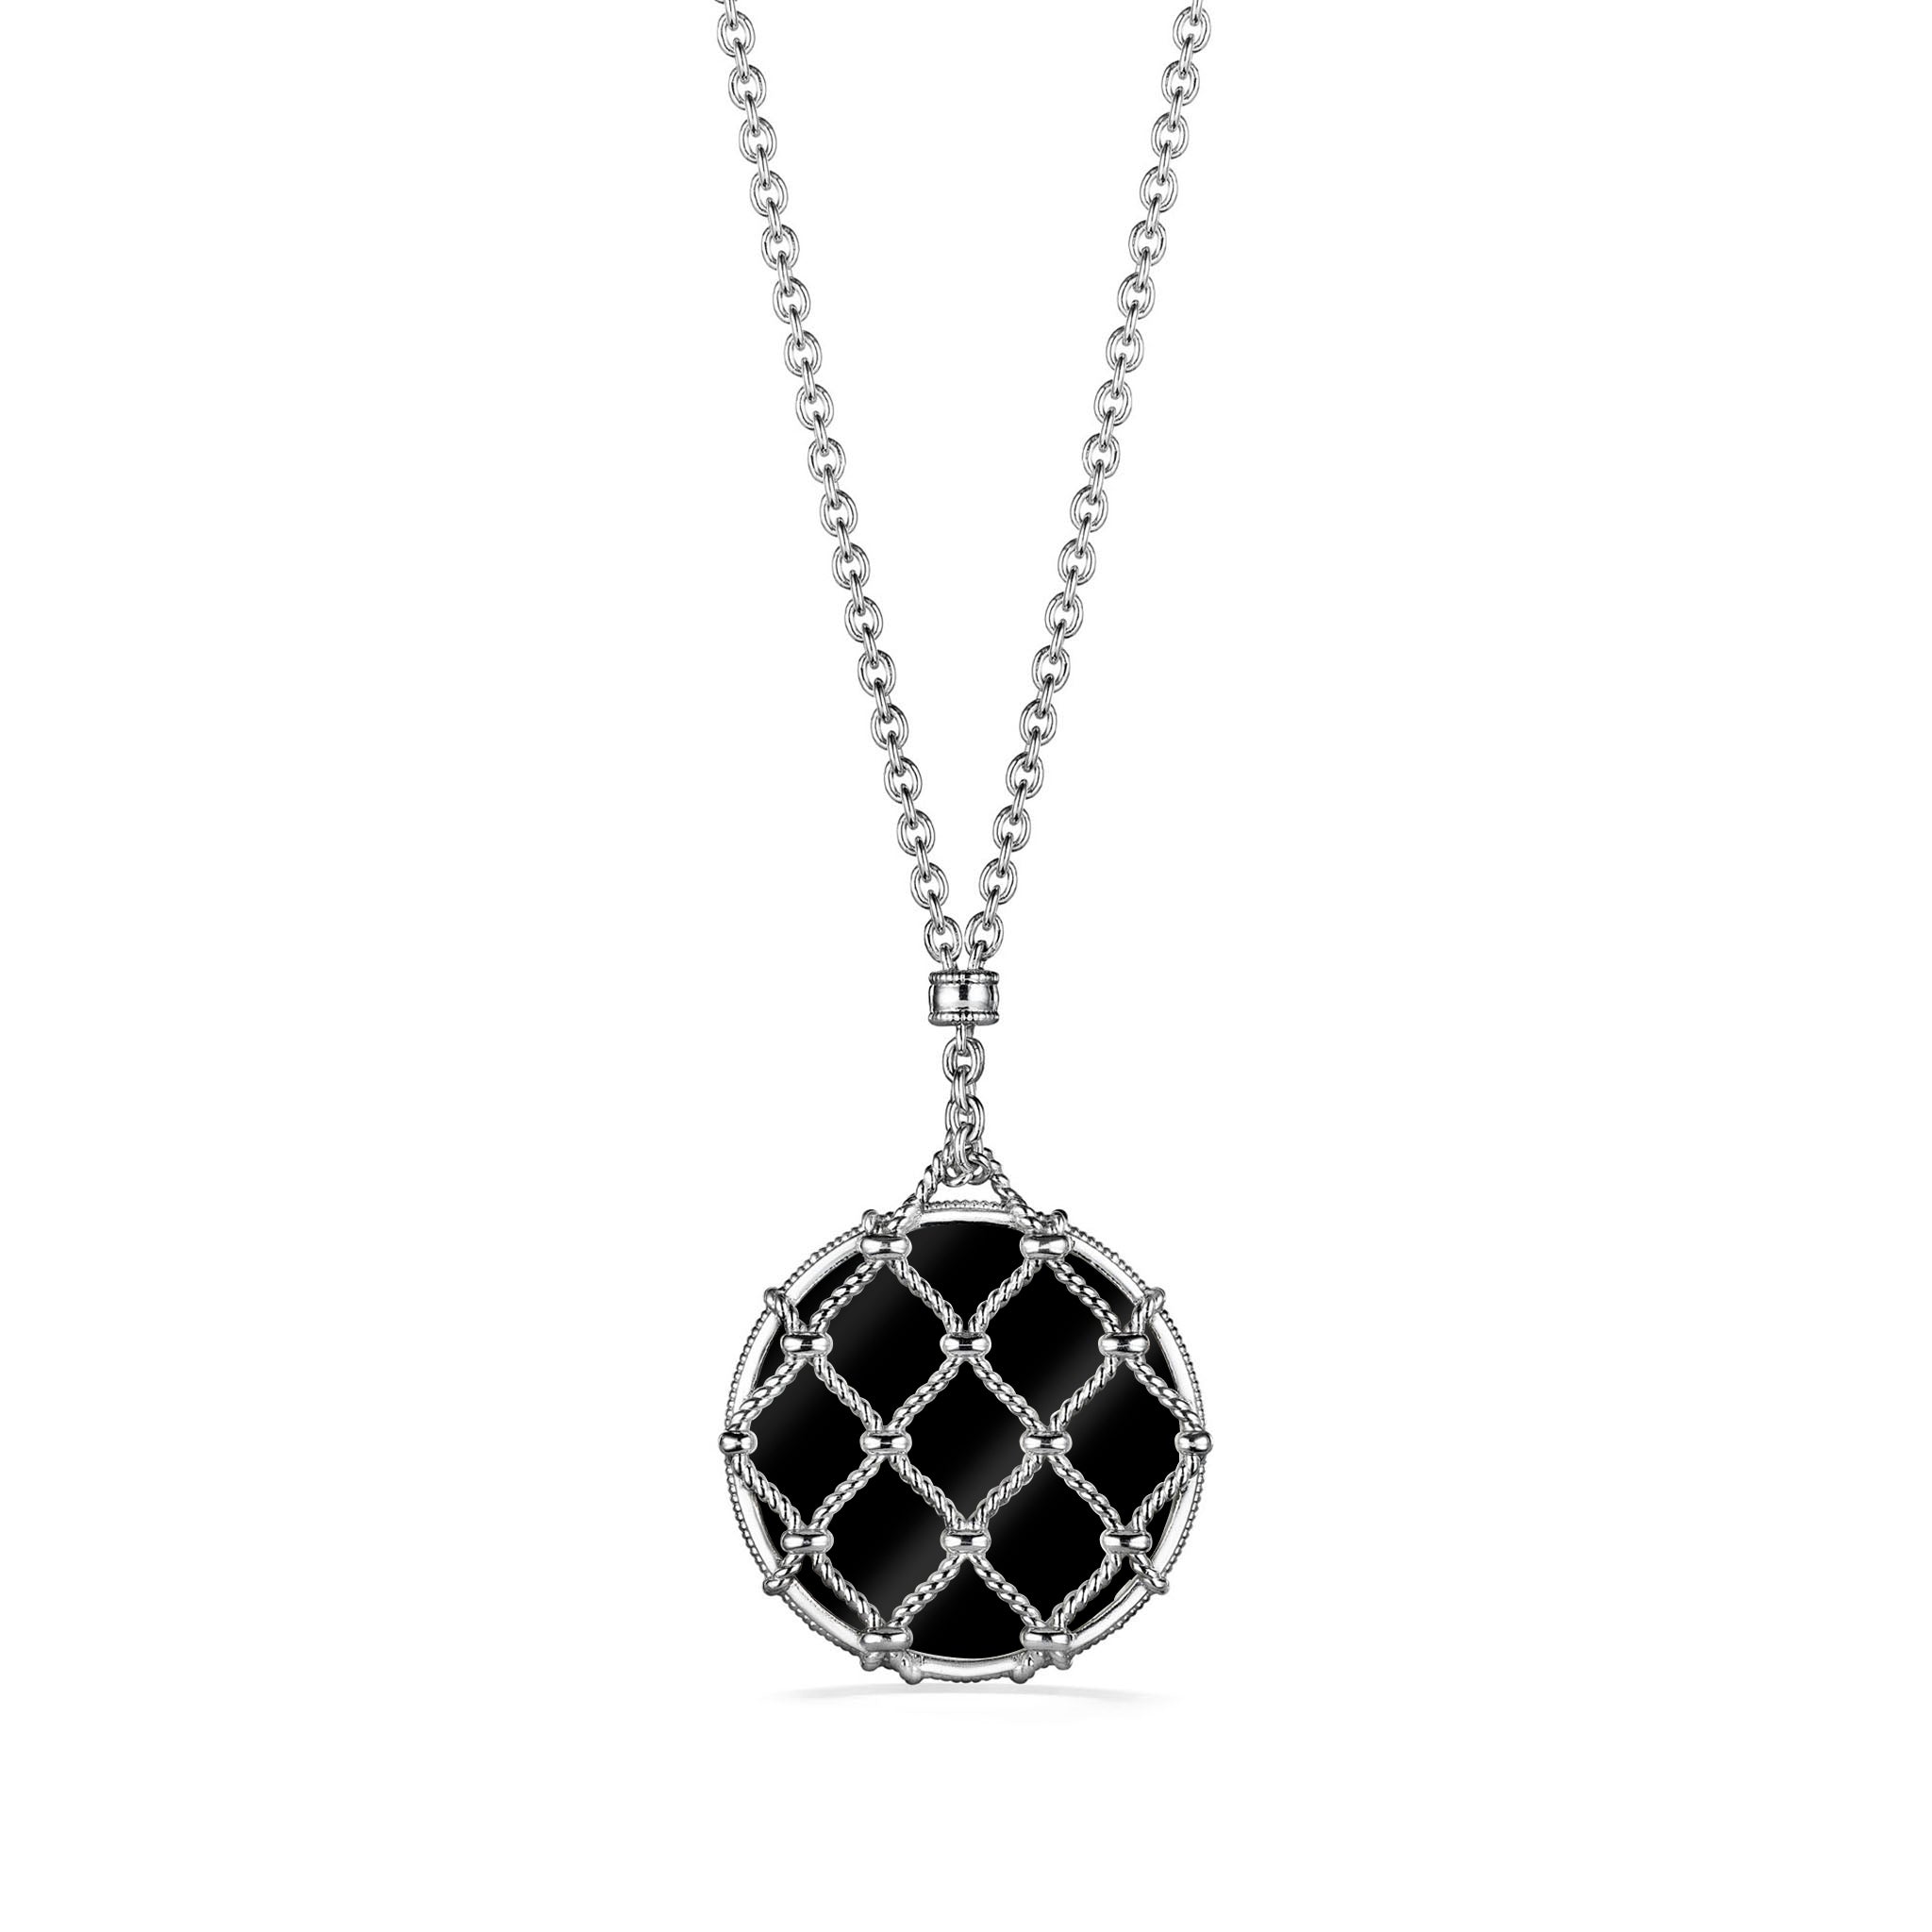 Isola Large Pendulum Pendant Necklace With Black Onyx